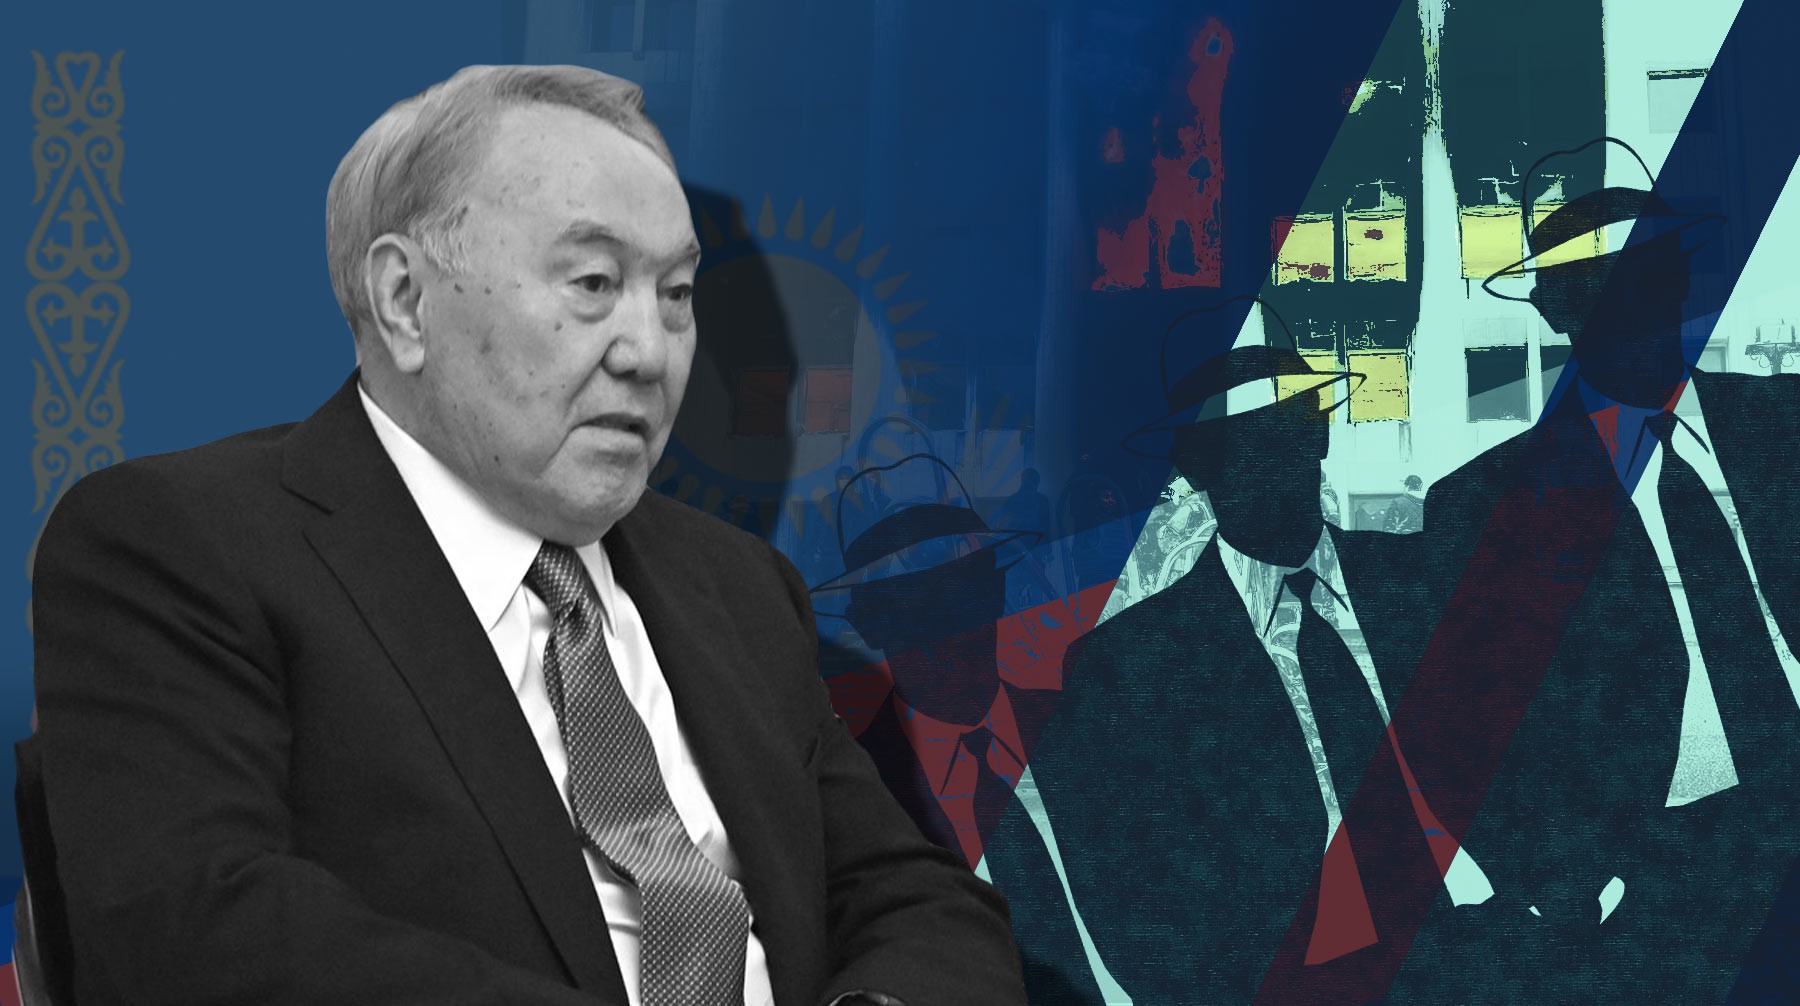 Dailystorm - Режим Назарбаева, западные спецслужбы или провокаторы от казахских элит — кто виноват в беспорядках в Казахстане?